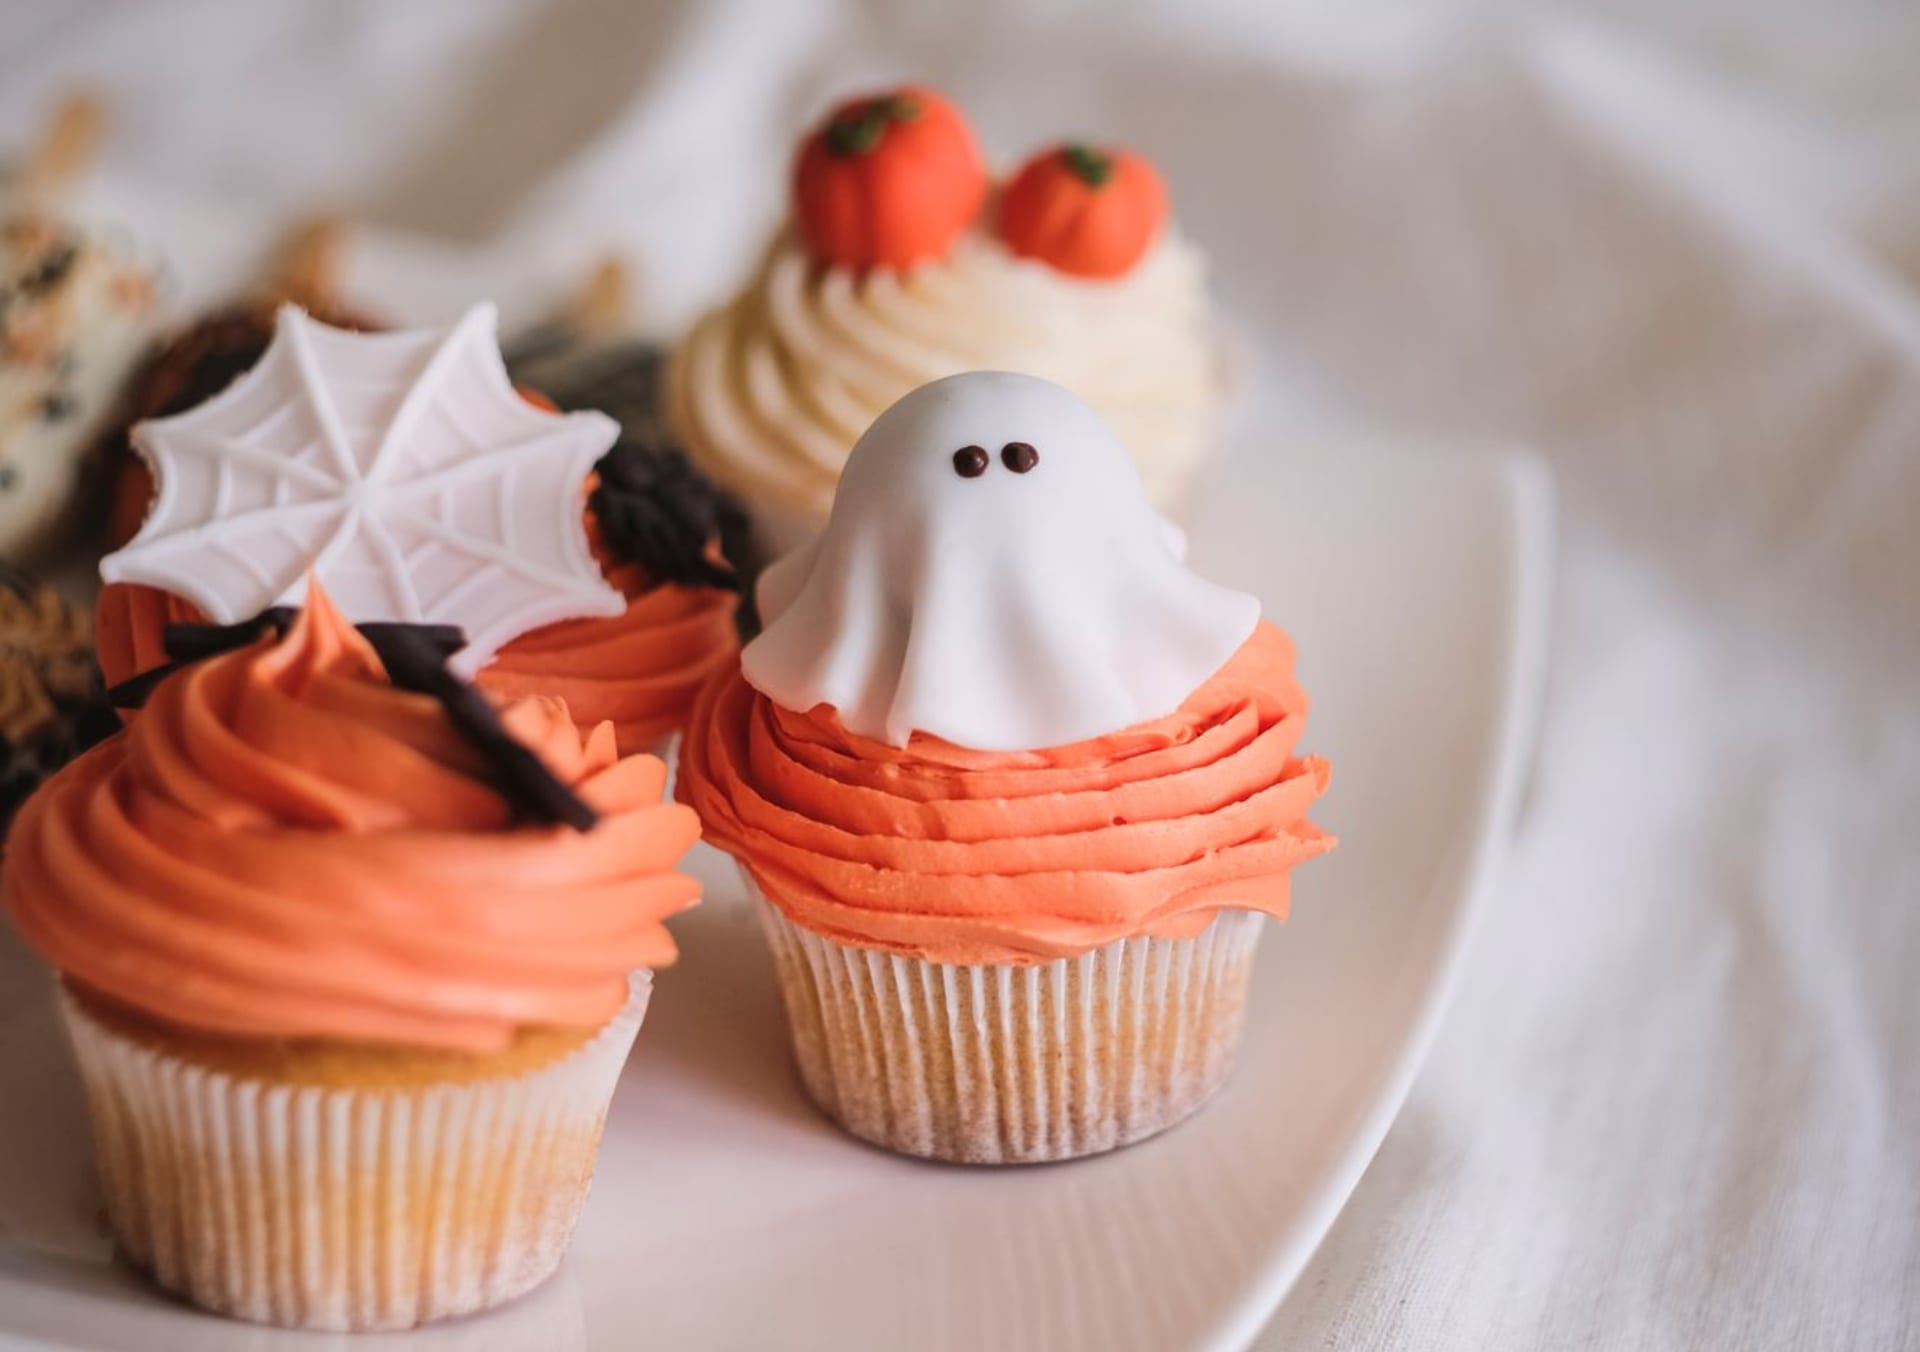 Veselé halloweenské cupcaky skvěle vypadají i chutnají